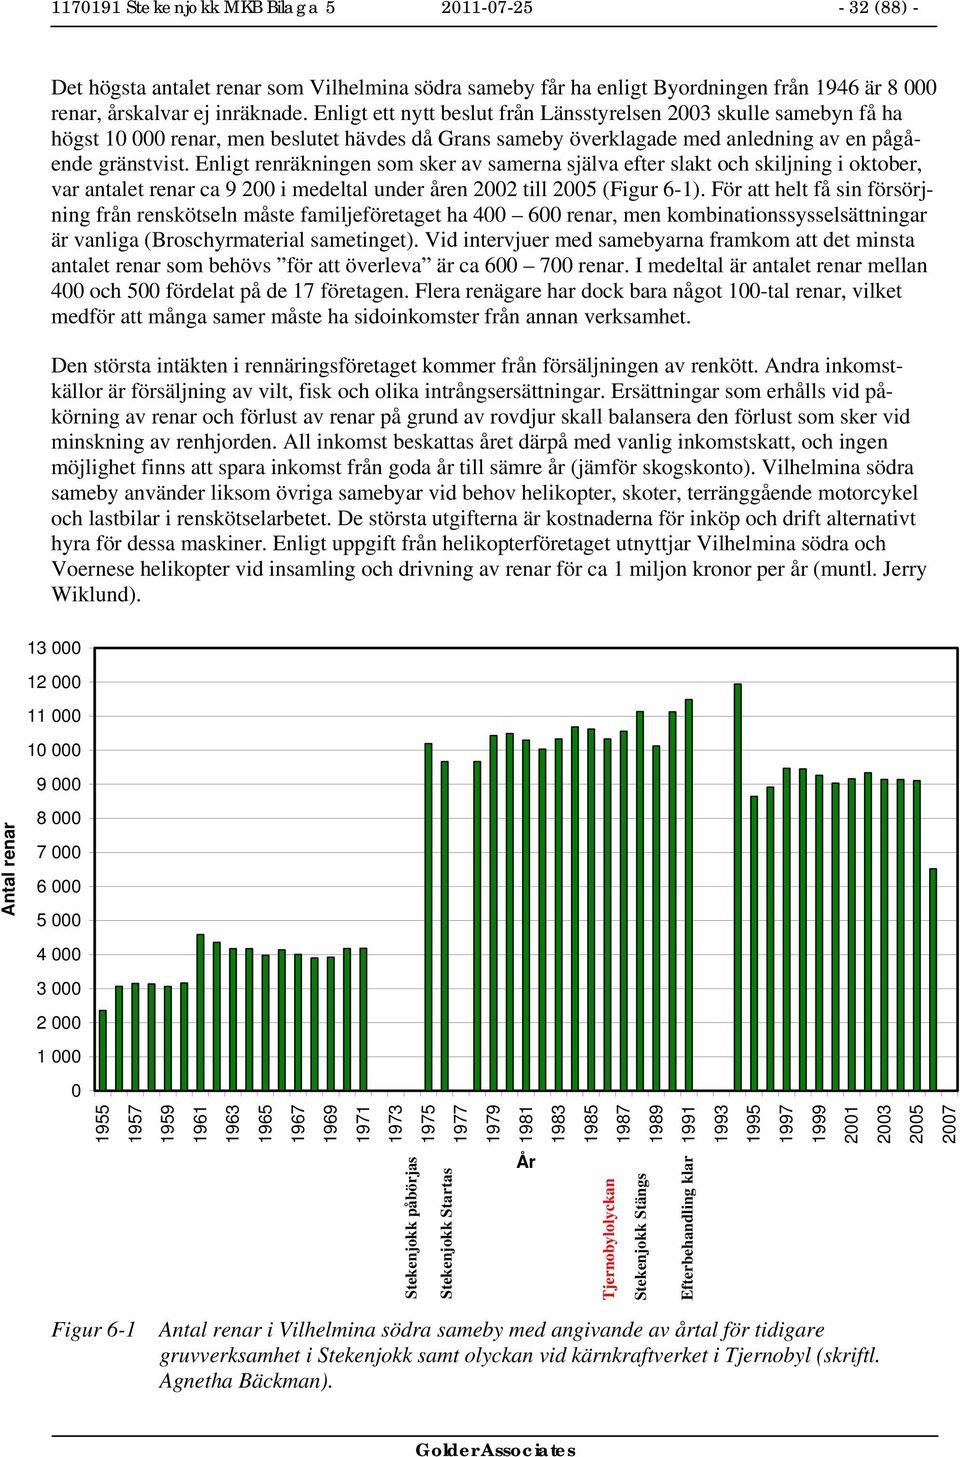 Enligt renräkningen som sker av samerna själva efter slakt och skiljning i oktober, var antalet renar ca 9 200 i medeltal under åren 2002 till 2005 (Figur 6-1).